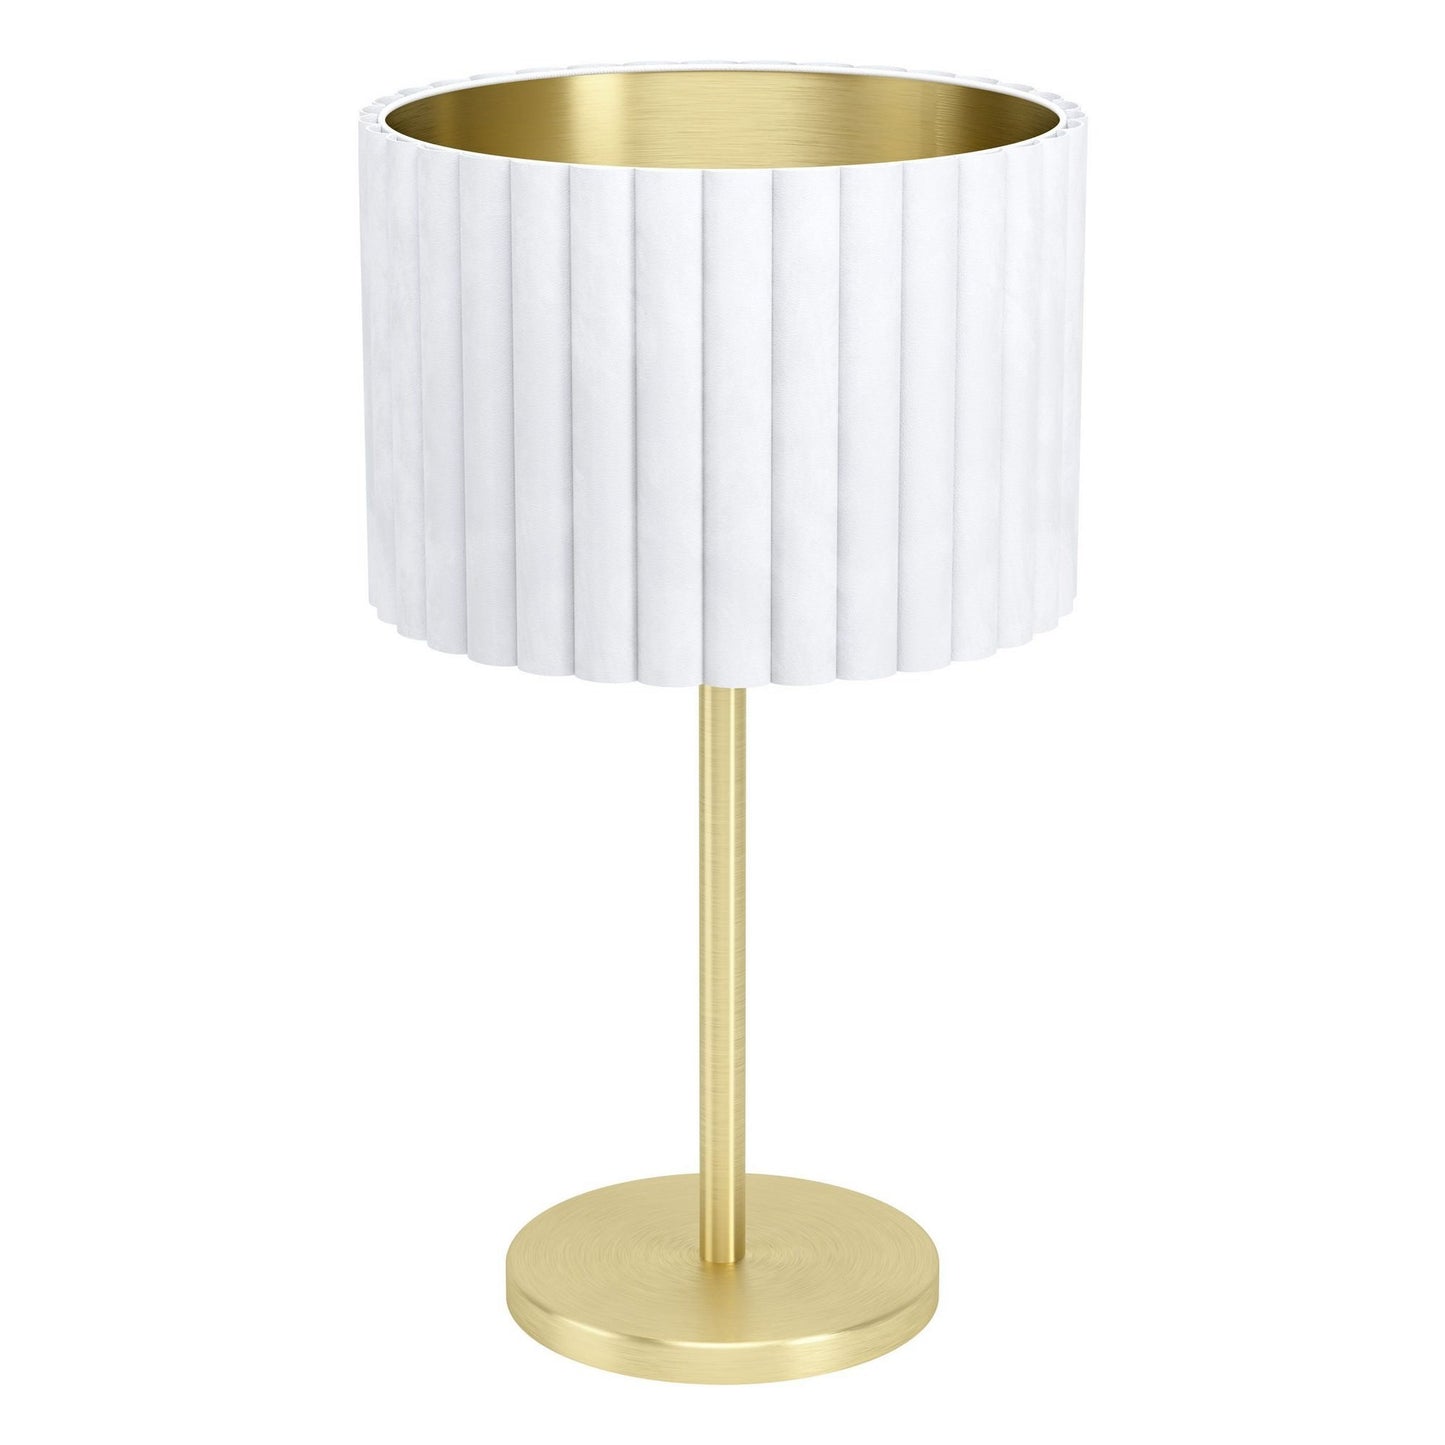 Tamaresco Metal Base Table Lamp, Gold / White